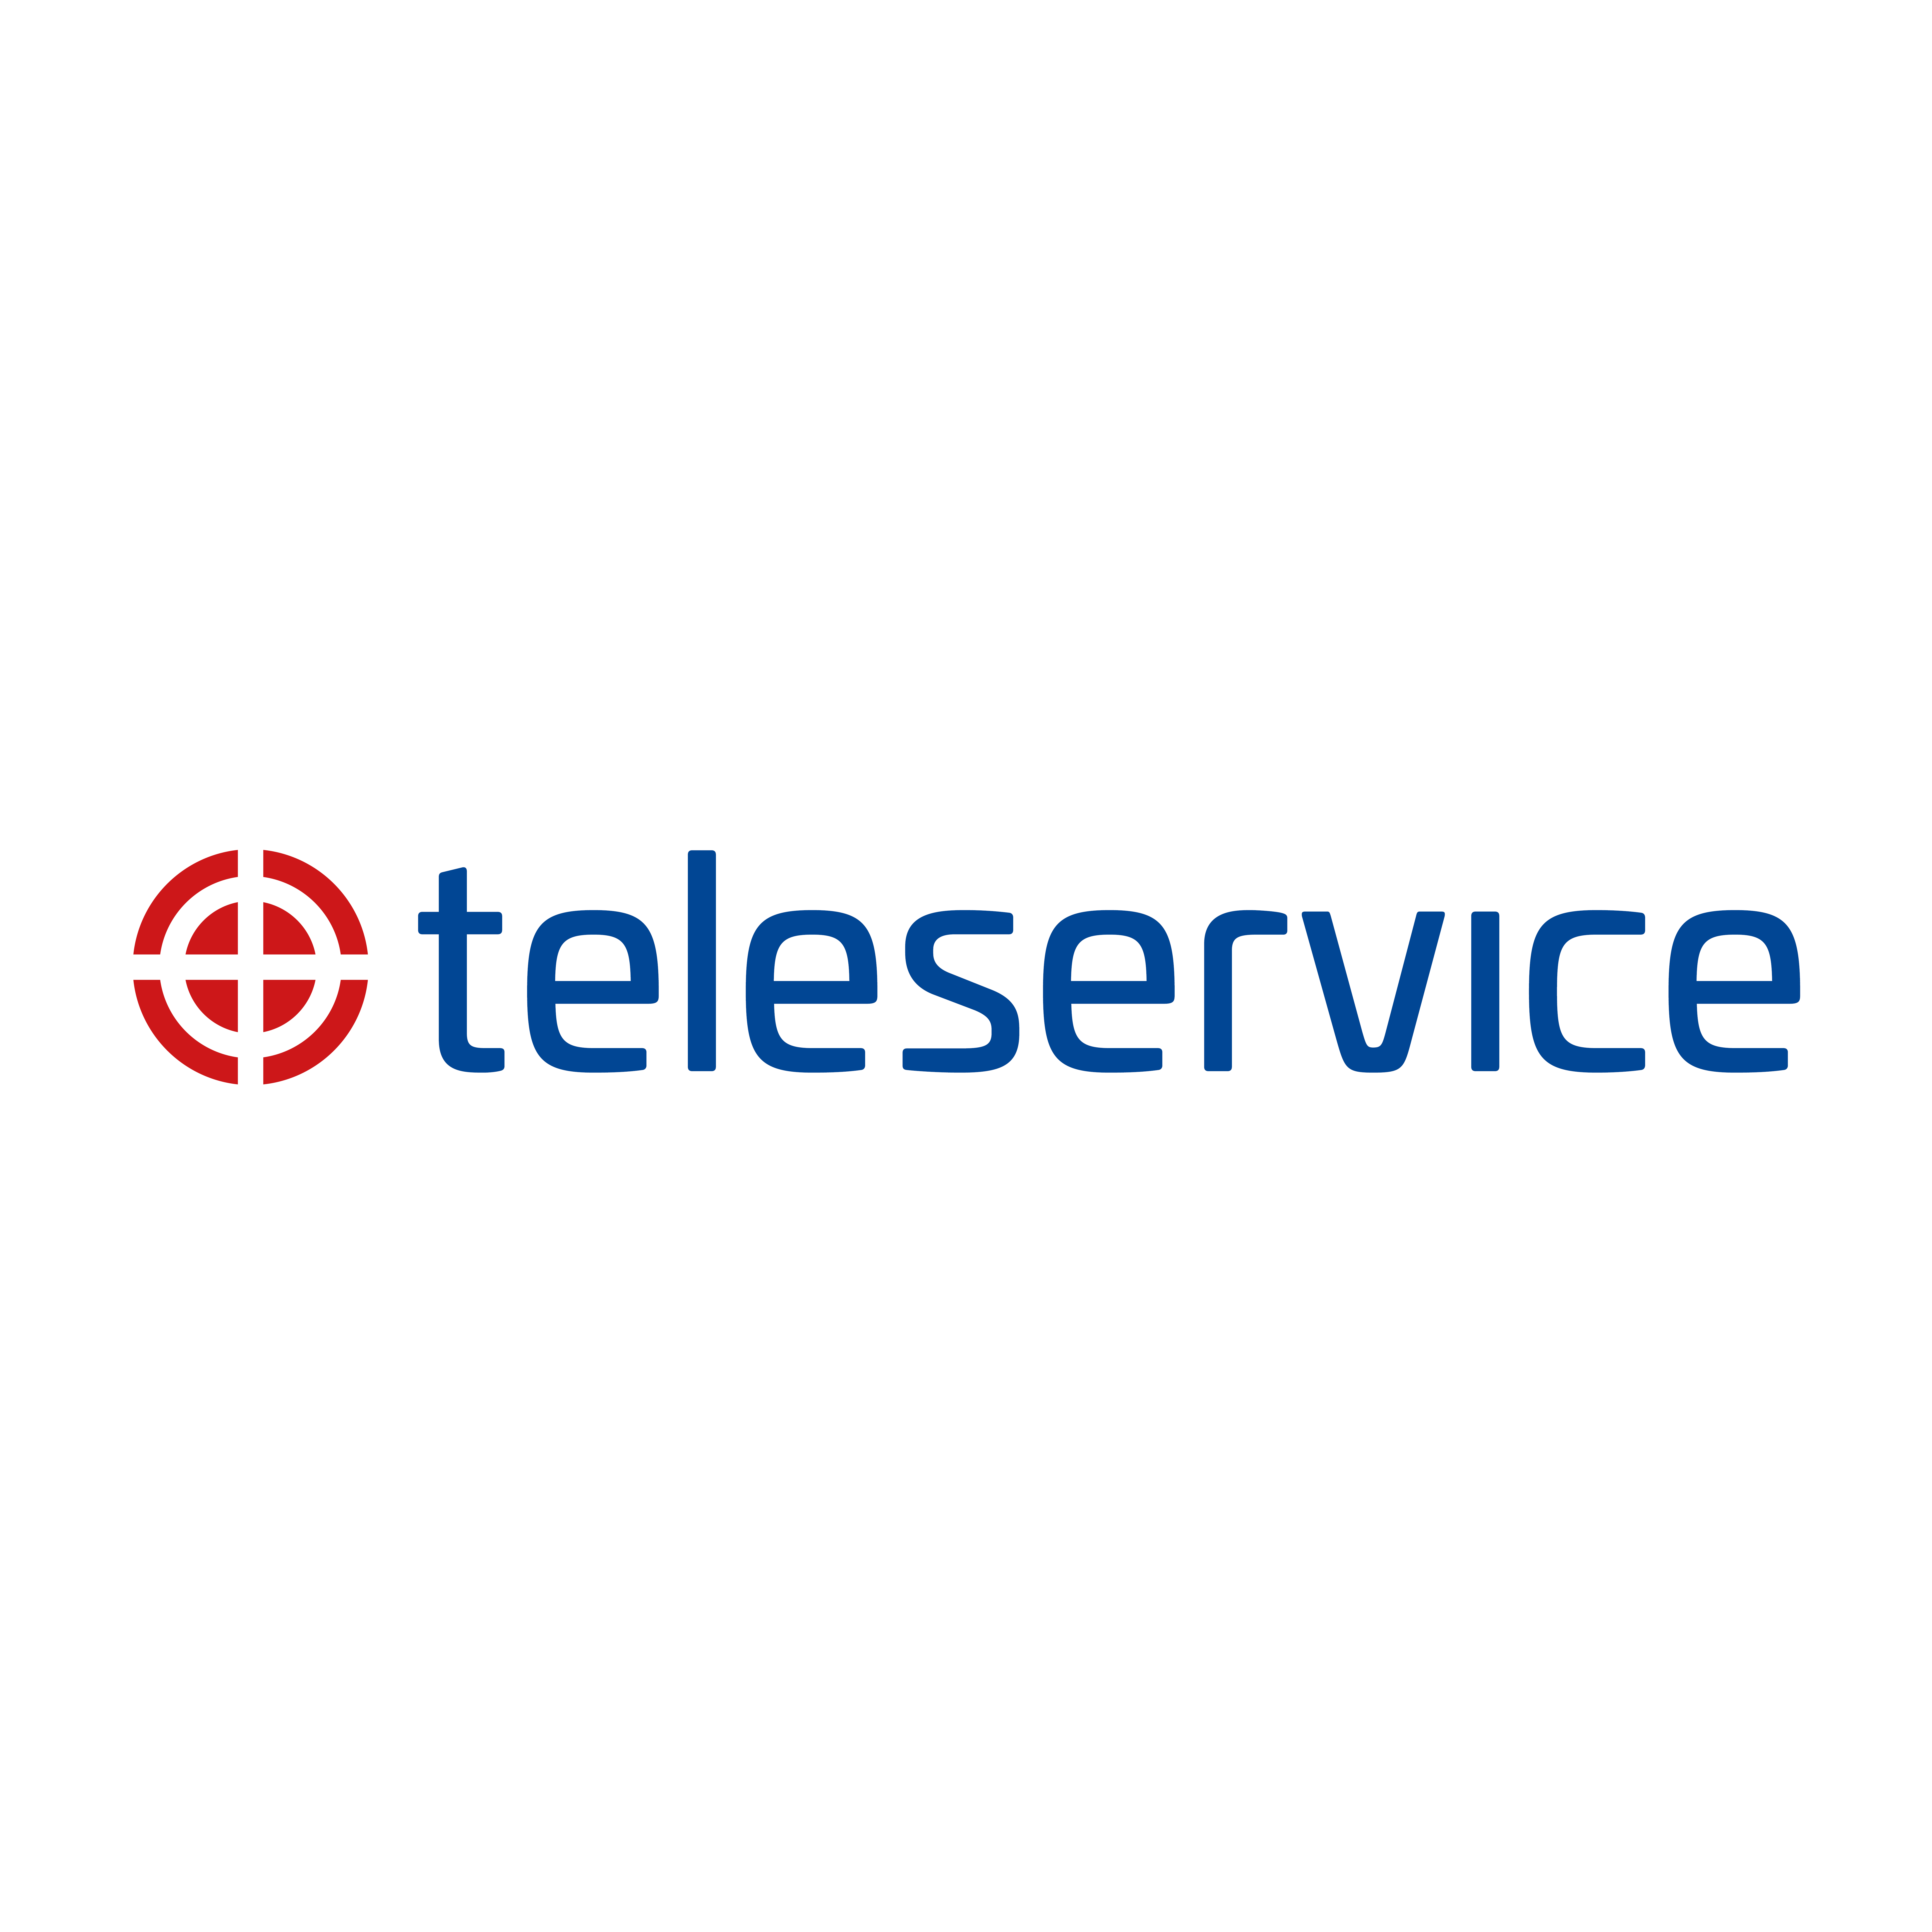 teleservice-it-företag